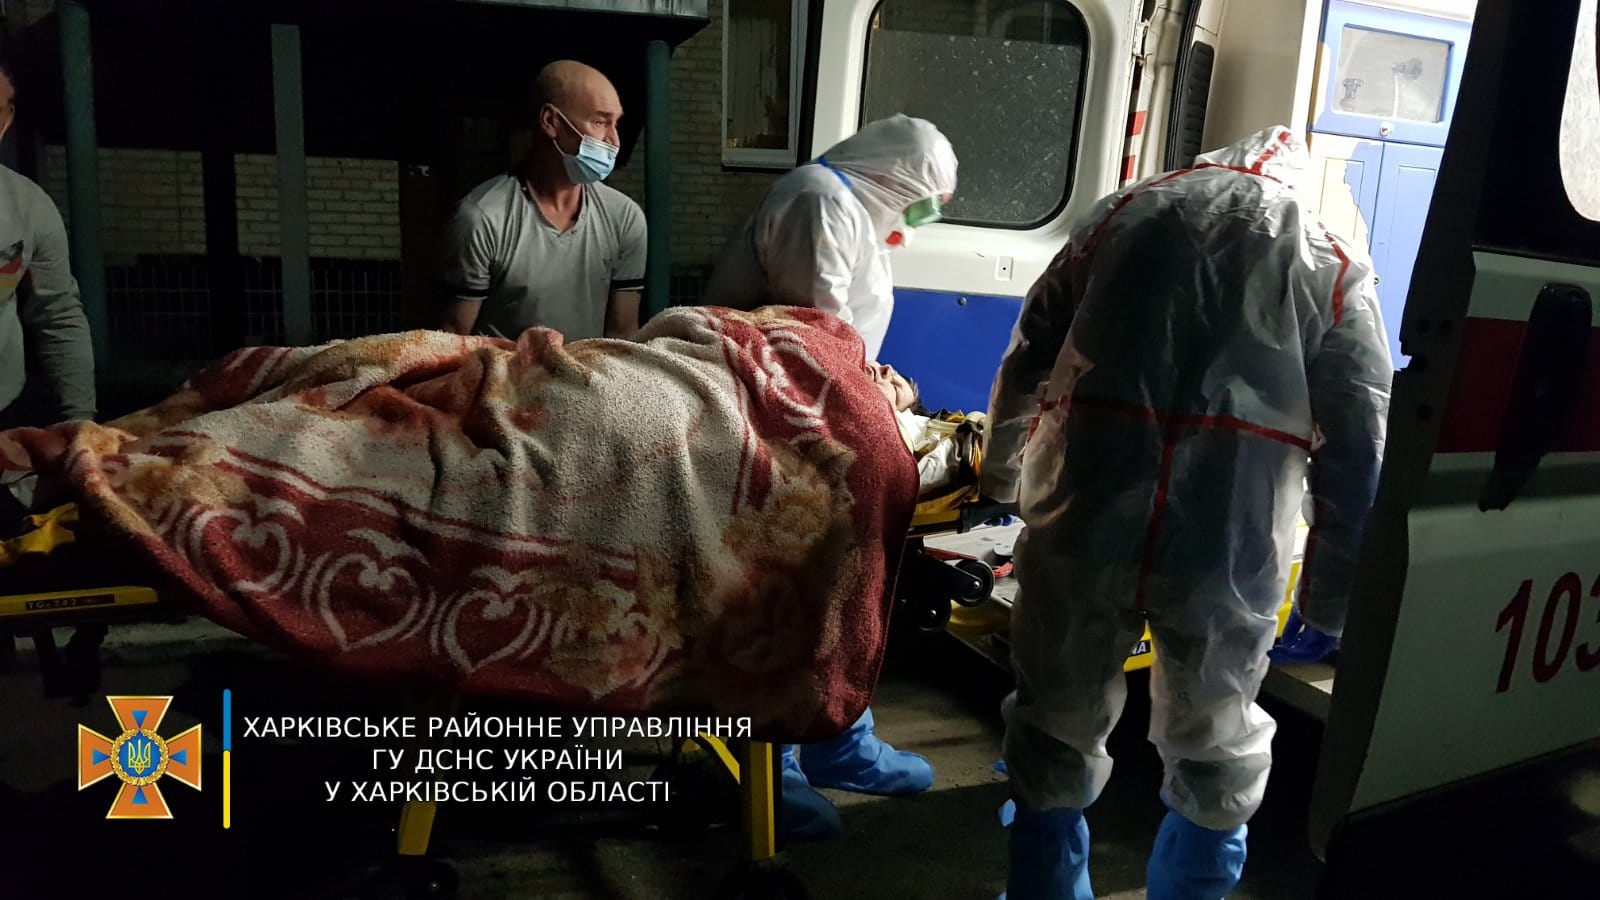 Харьковские спасатели помогли медикам вынести из квартиры женщину с подозрением на COVID-19 (фото)